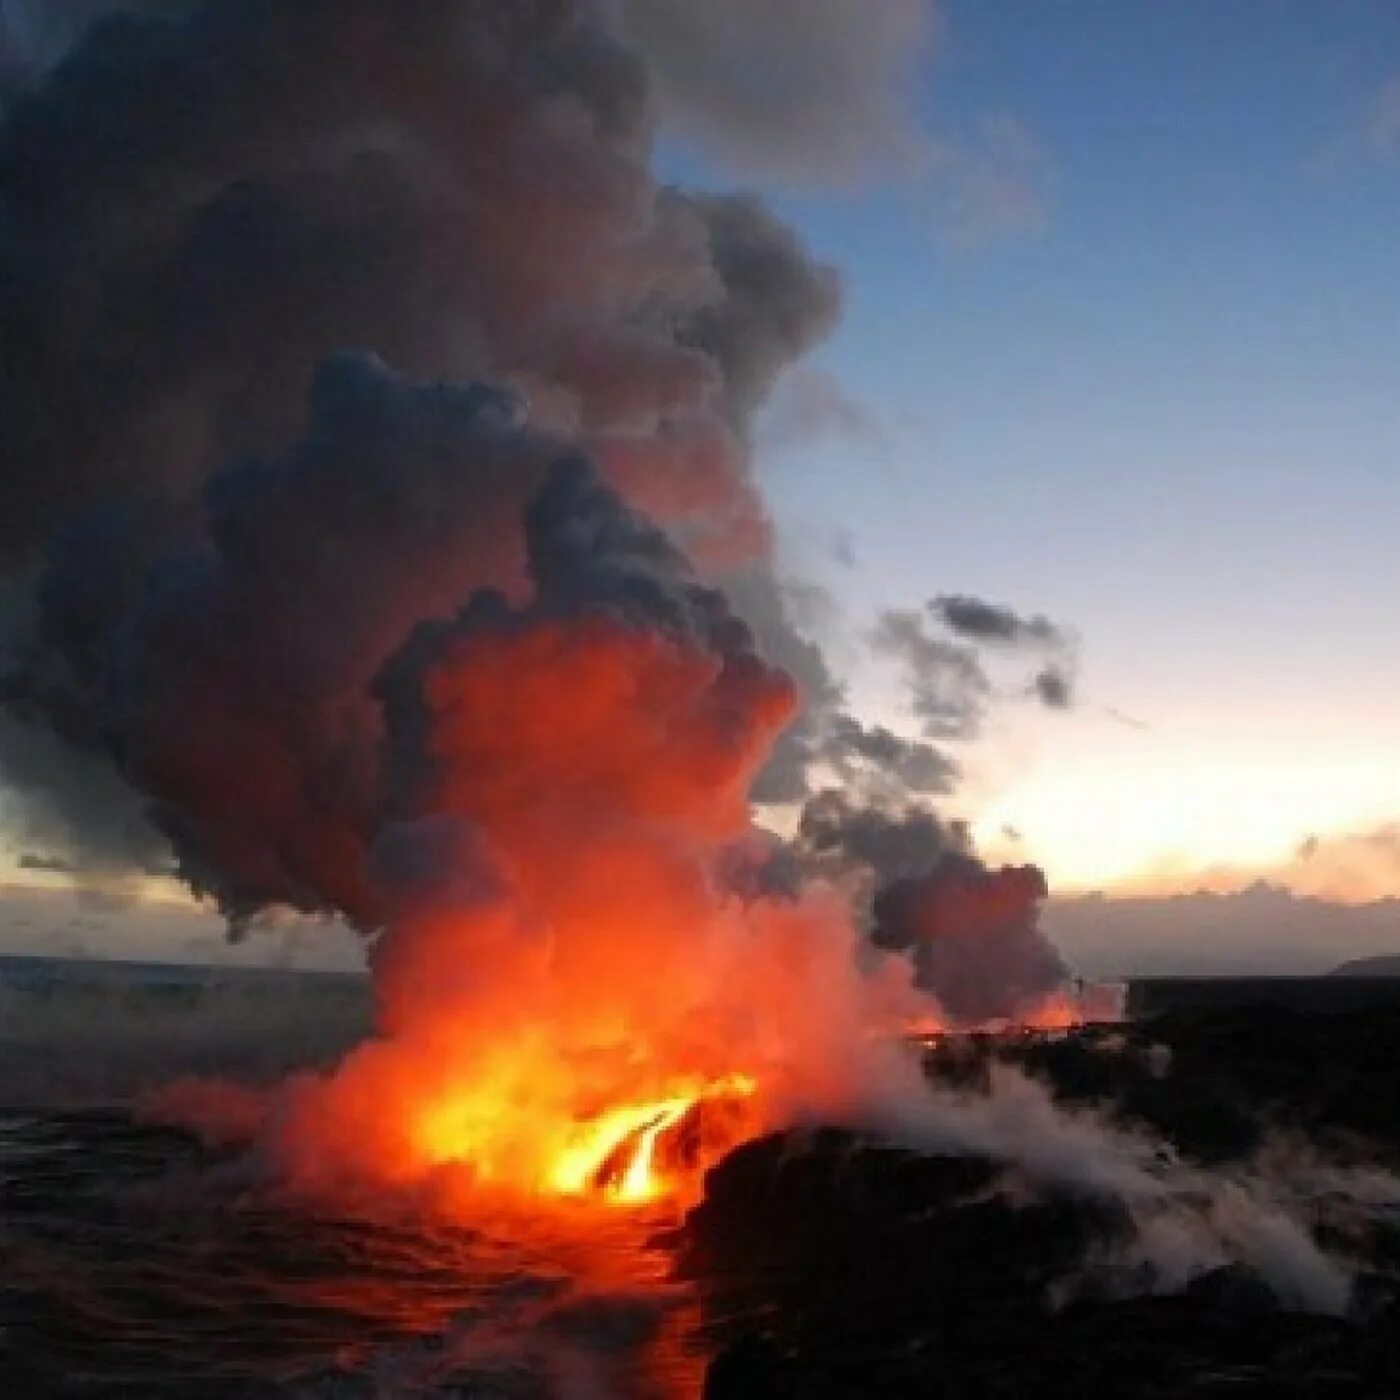 Гавайский вулкан Килауэа. Извержение вулкана на Гавайях. Подводный вулкан Эль Фуэго. Лоихи вулканы Гавайев. Извержение вулкана уничтожило город